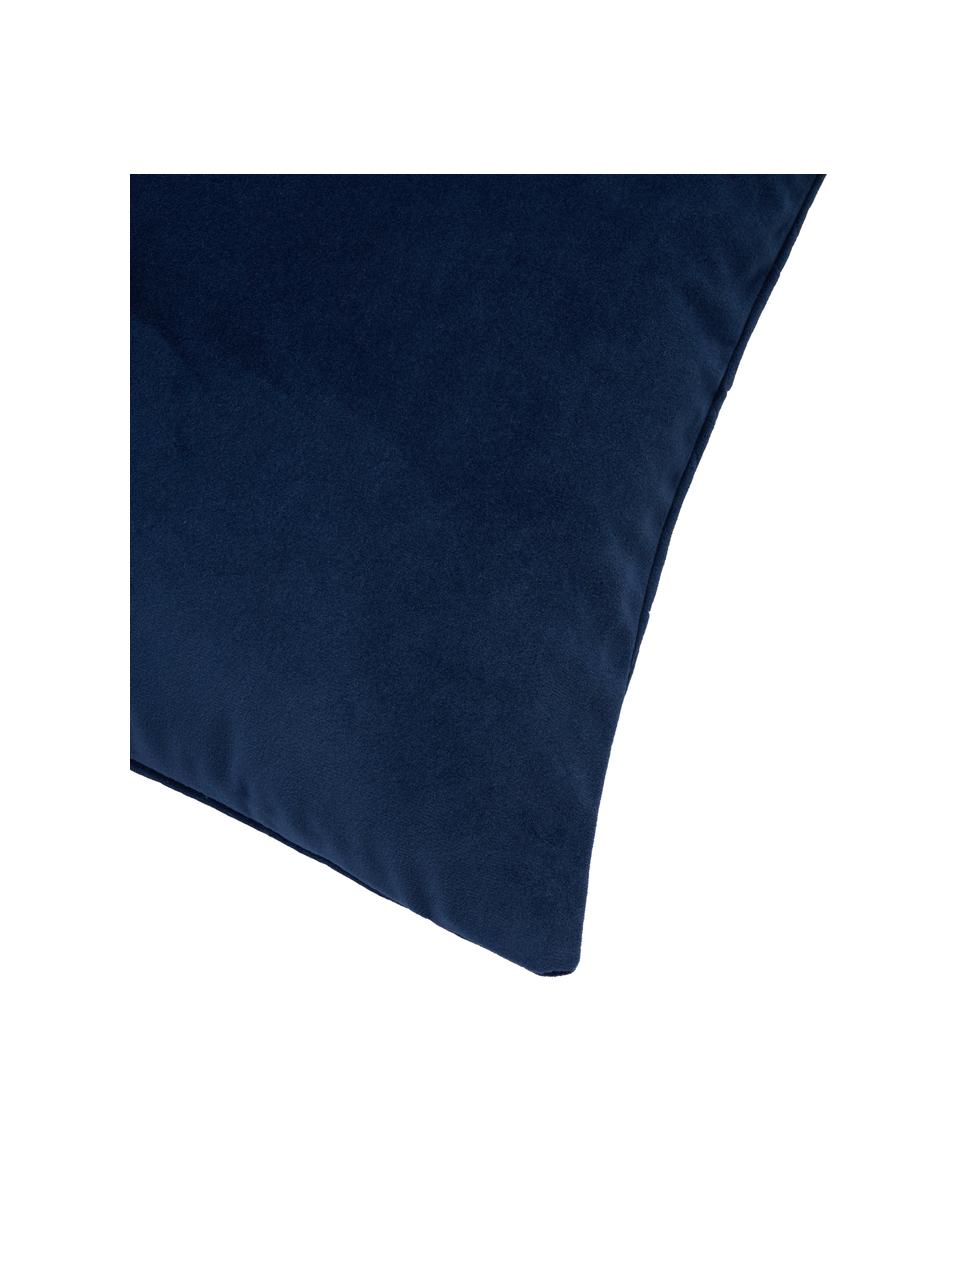 Federa arredo in velluto blu scuro con abbellimento decorativo Hera, 100% poliestere riciclato, Velluto blu scuro, Larg. 45 x Lung. 45 cm